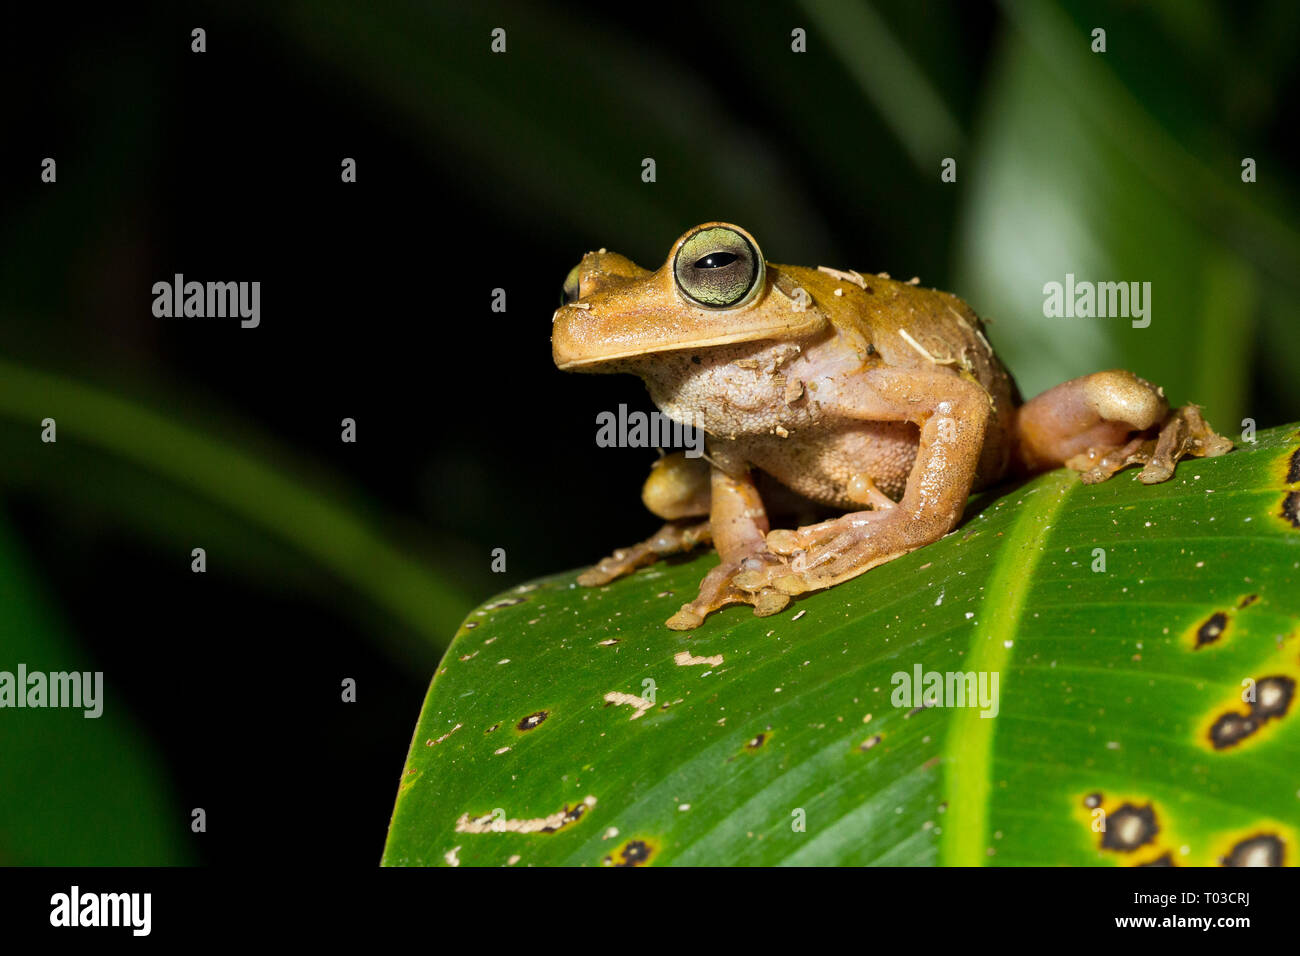 Costa Rica Tree Frog, la rana arborícola de gladiador, Drake Bay, Península de Osa, Costa Rica. Excursión nocturna. Foto de stock